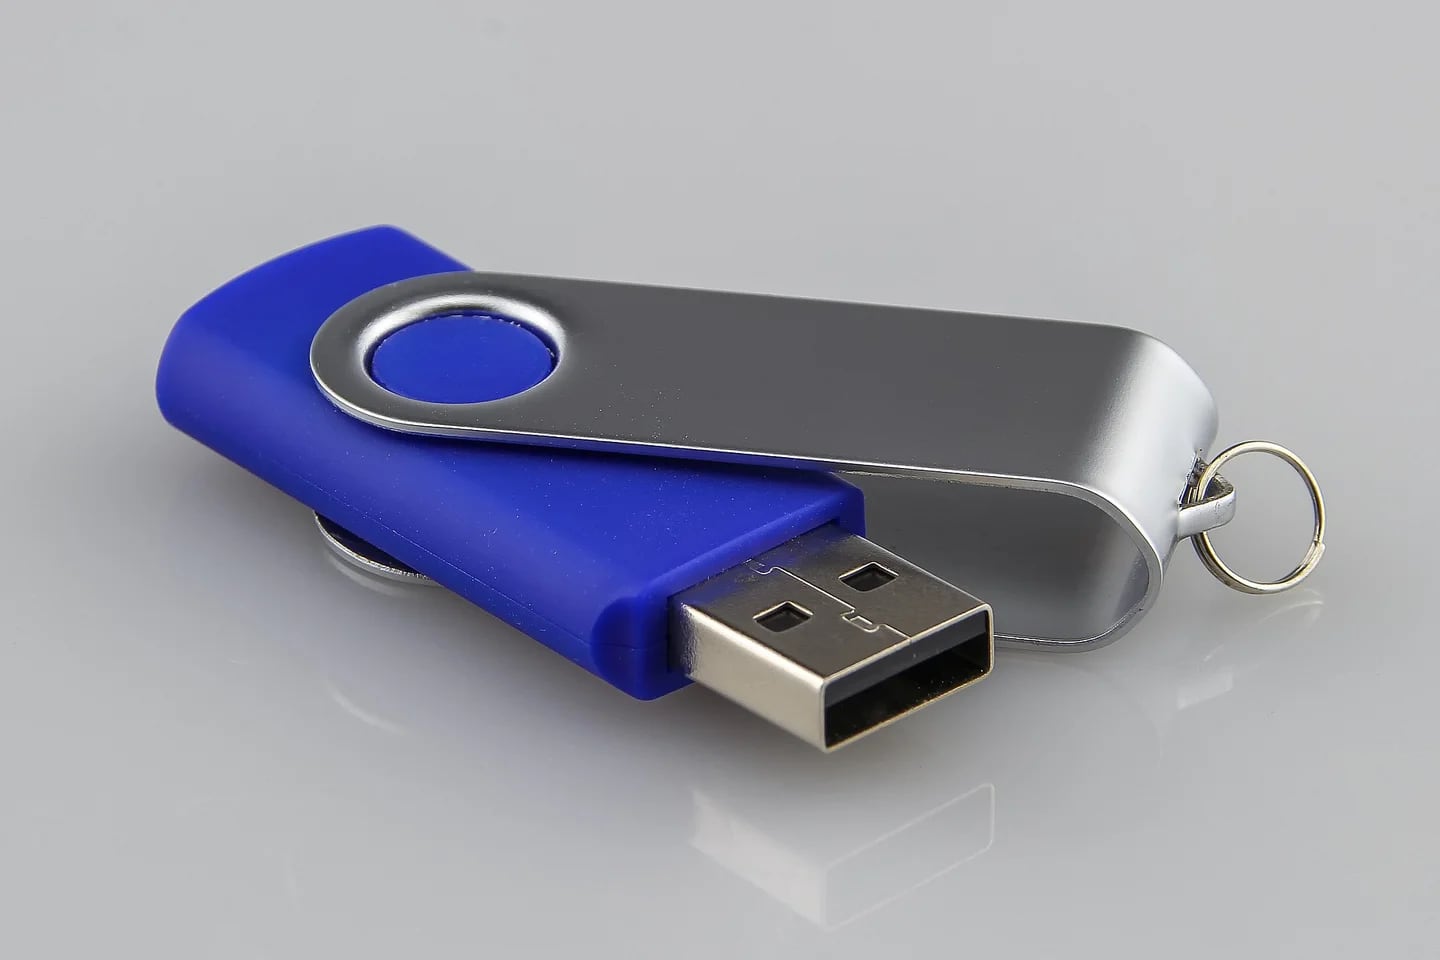 Ojo con estos pendrive USB, pueden infectar tu PC con malware